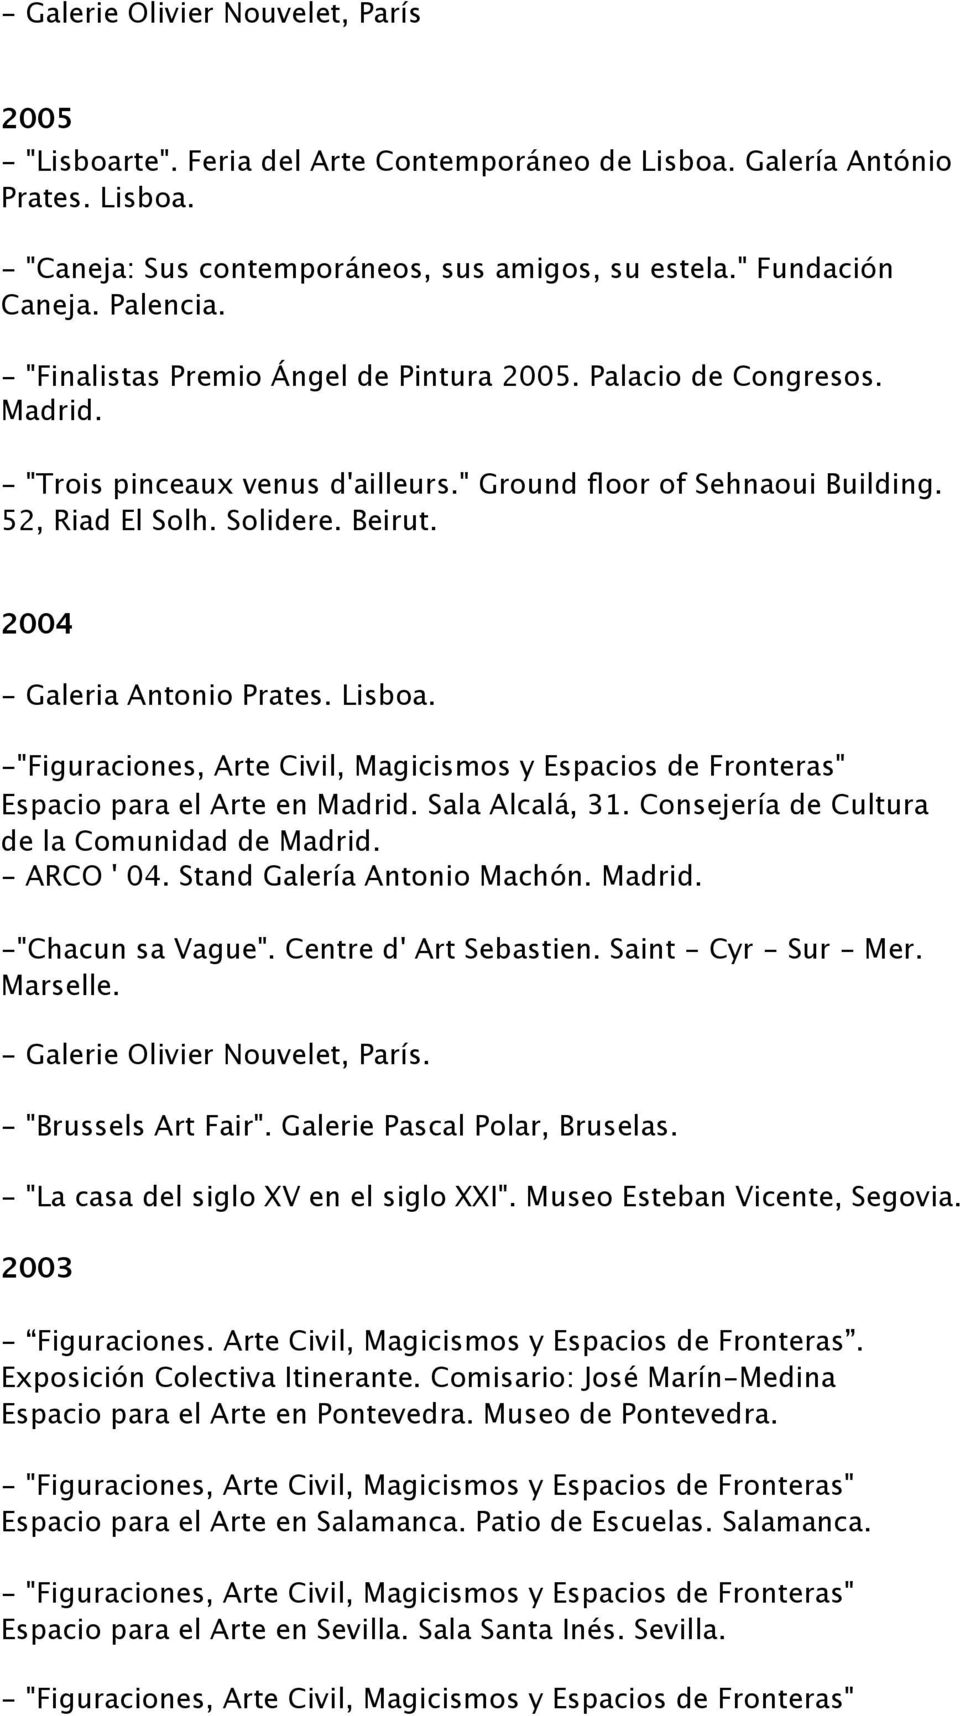 2004 - Galeria Antonio Prates. Lisboa. -"Figuraciones, Arte Civil, Magicismos y Espacios de Fronteras" Espacio para el Arte en Madrid. Sala Alcalá, 31. Consejería de Cultura de la Comunidad de Madrid.